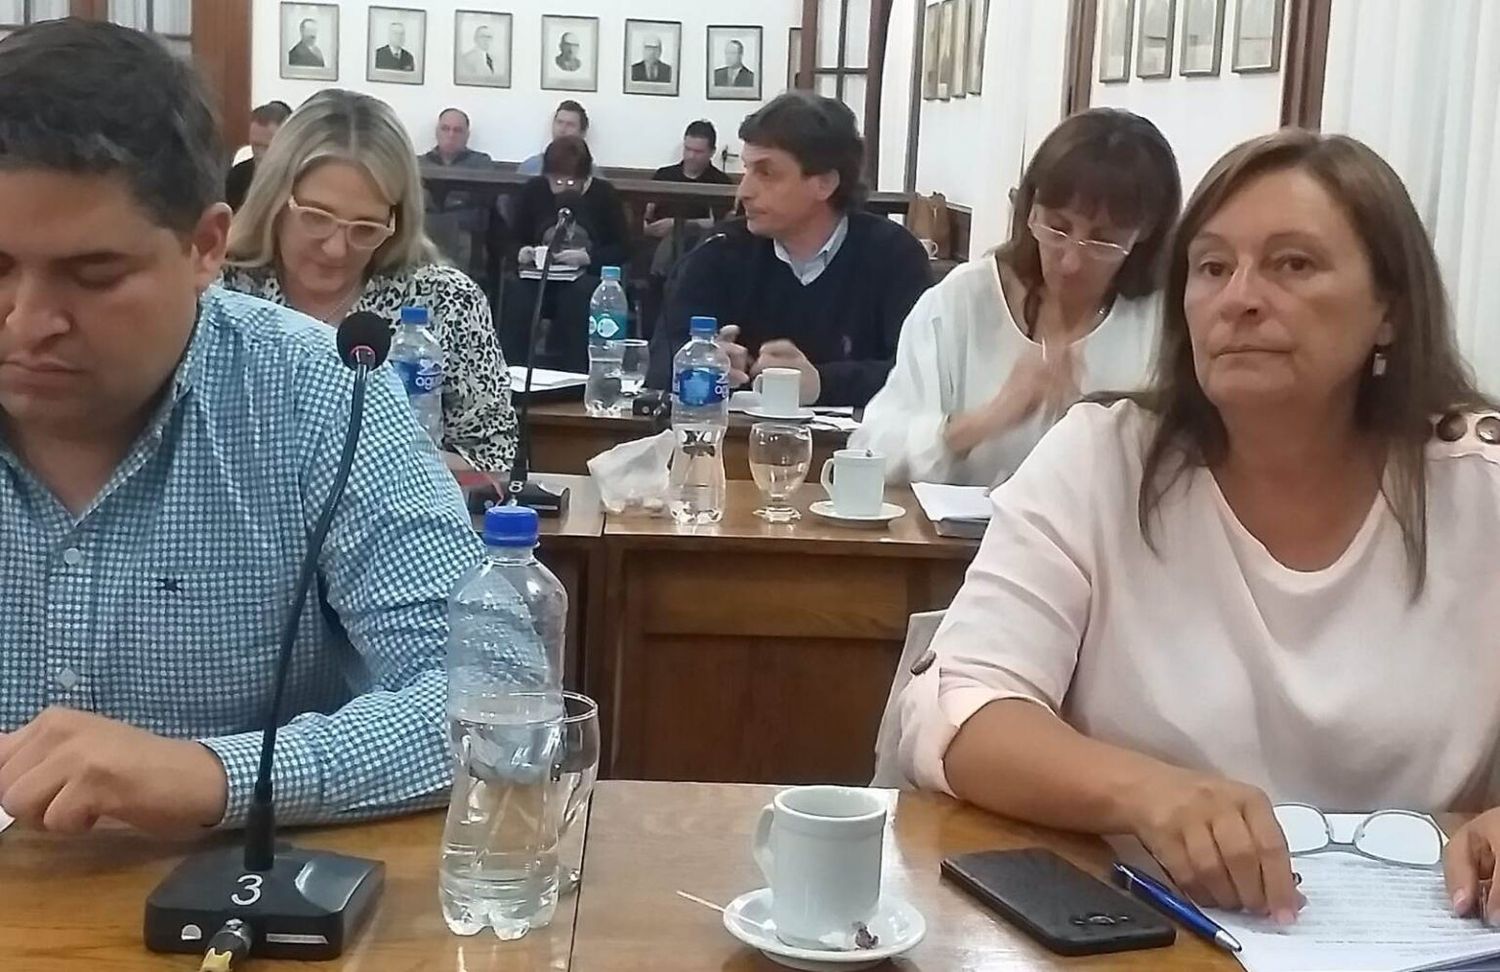 9 de Julio: El Concejo Deliberante trata la renuncia del concejal Zabaleta, quien se fue denunciando presiones